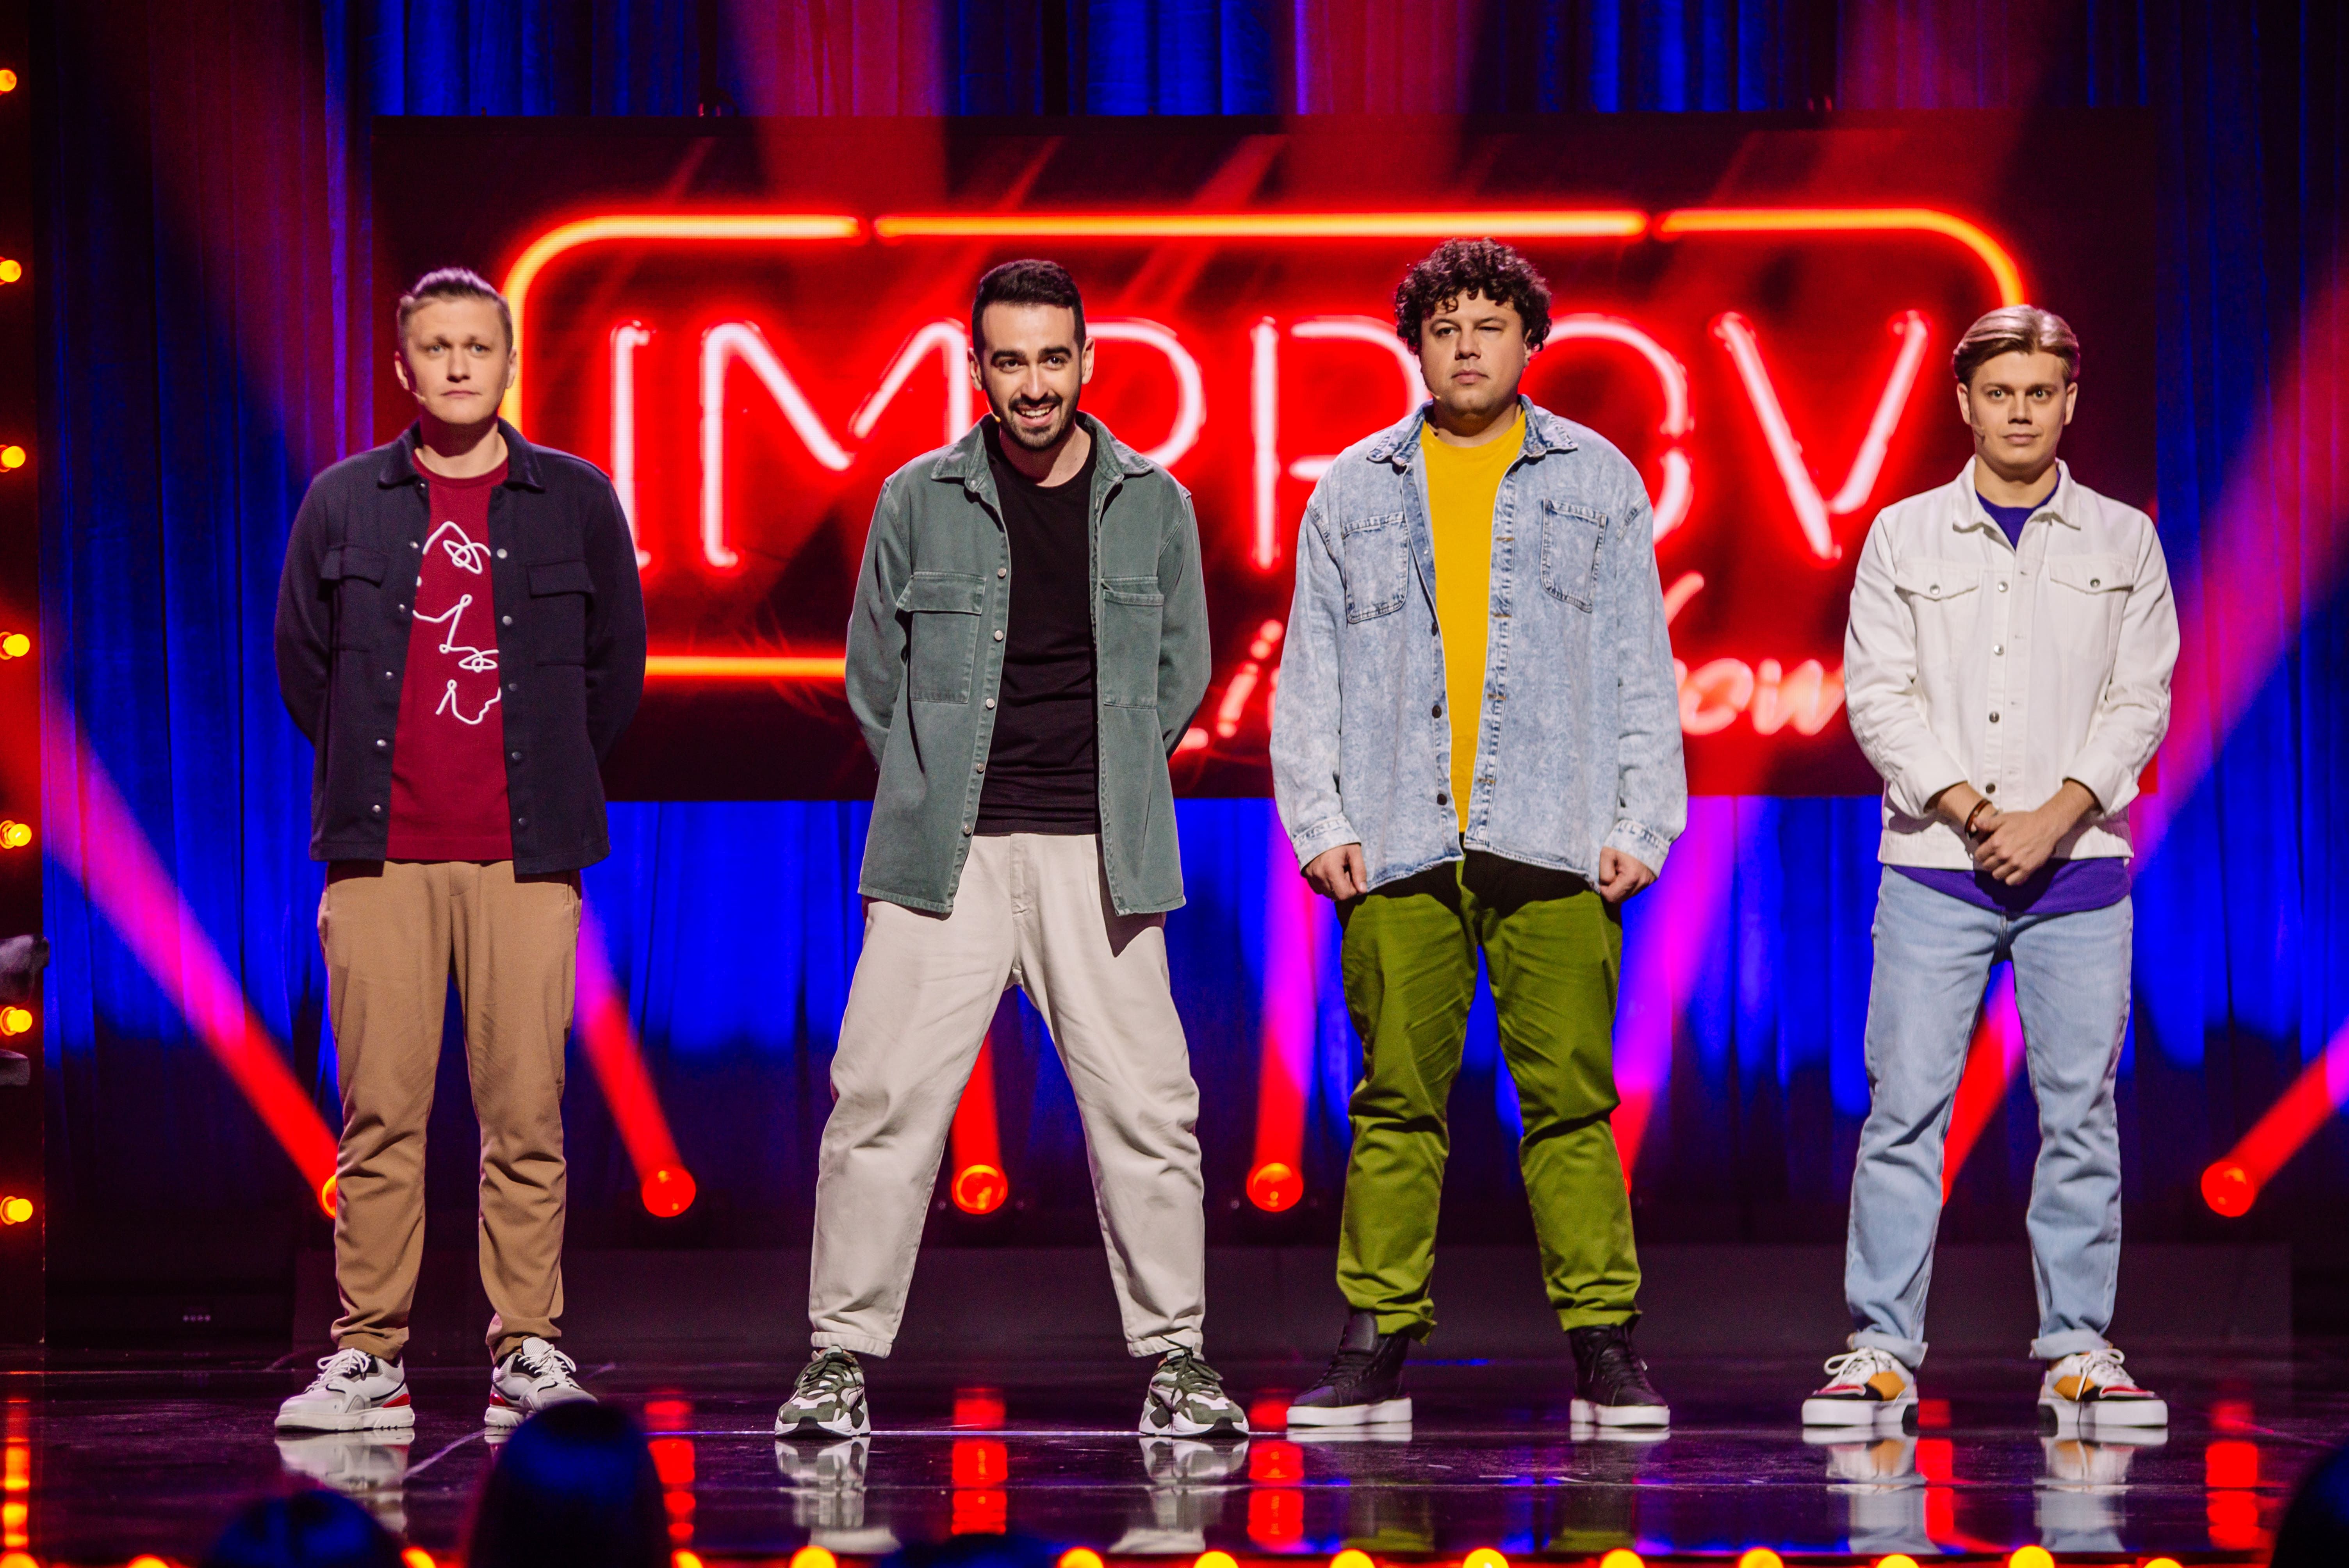 Новий канал покаже другий сезон Improv Live Show навесні 2021 року